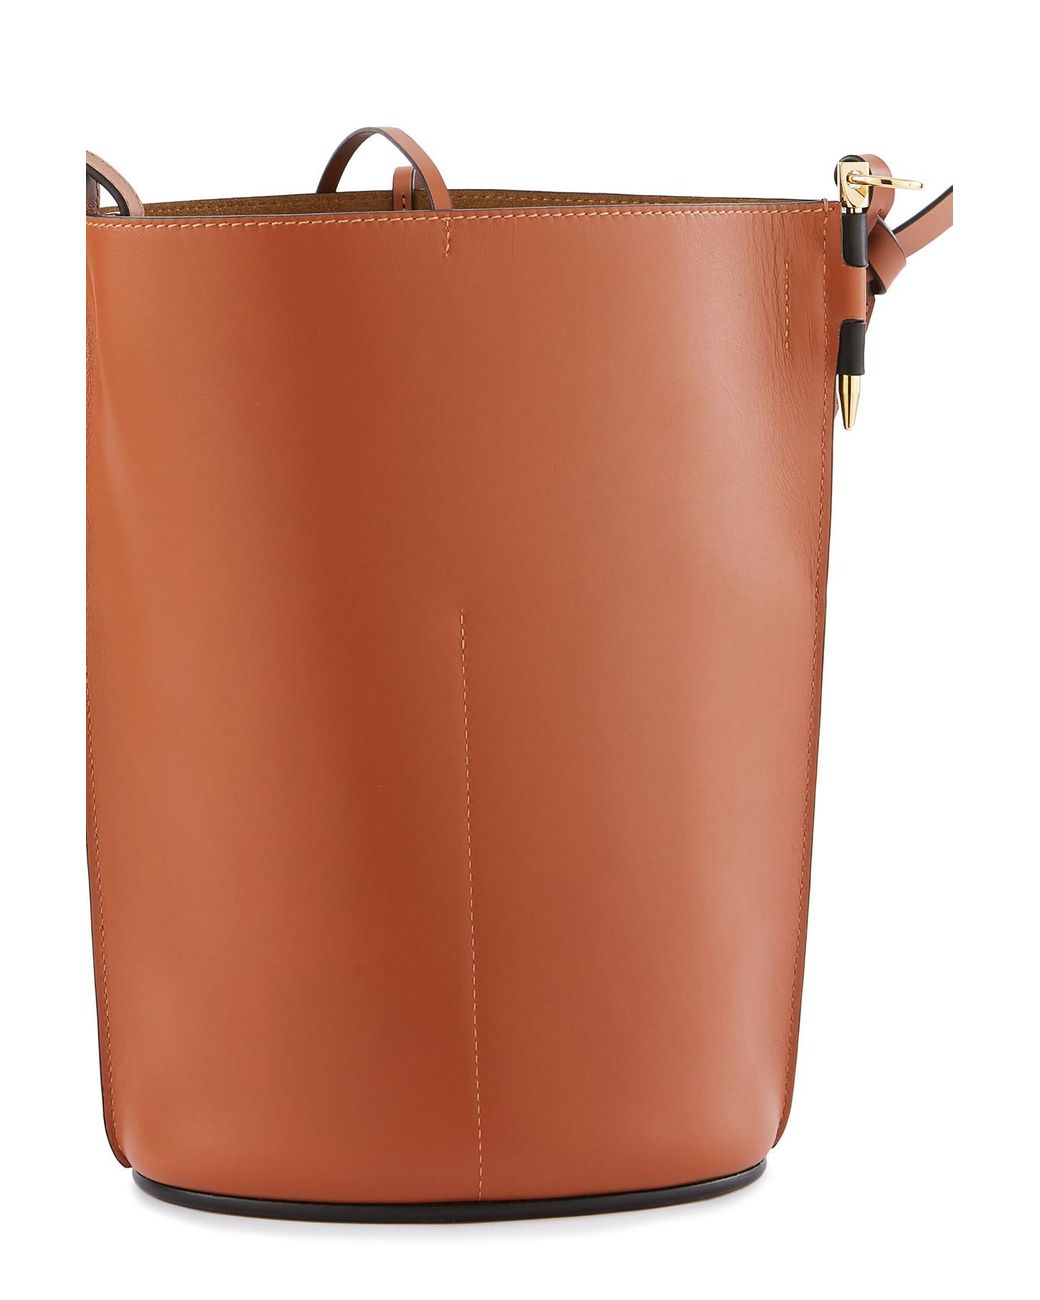 SALE‼️Pre-order Loewe Gate Anagram Bucket Bag in Black and Tan